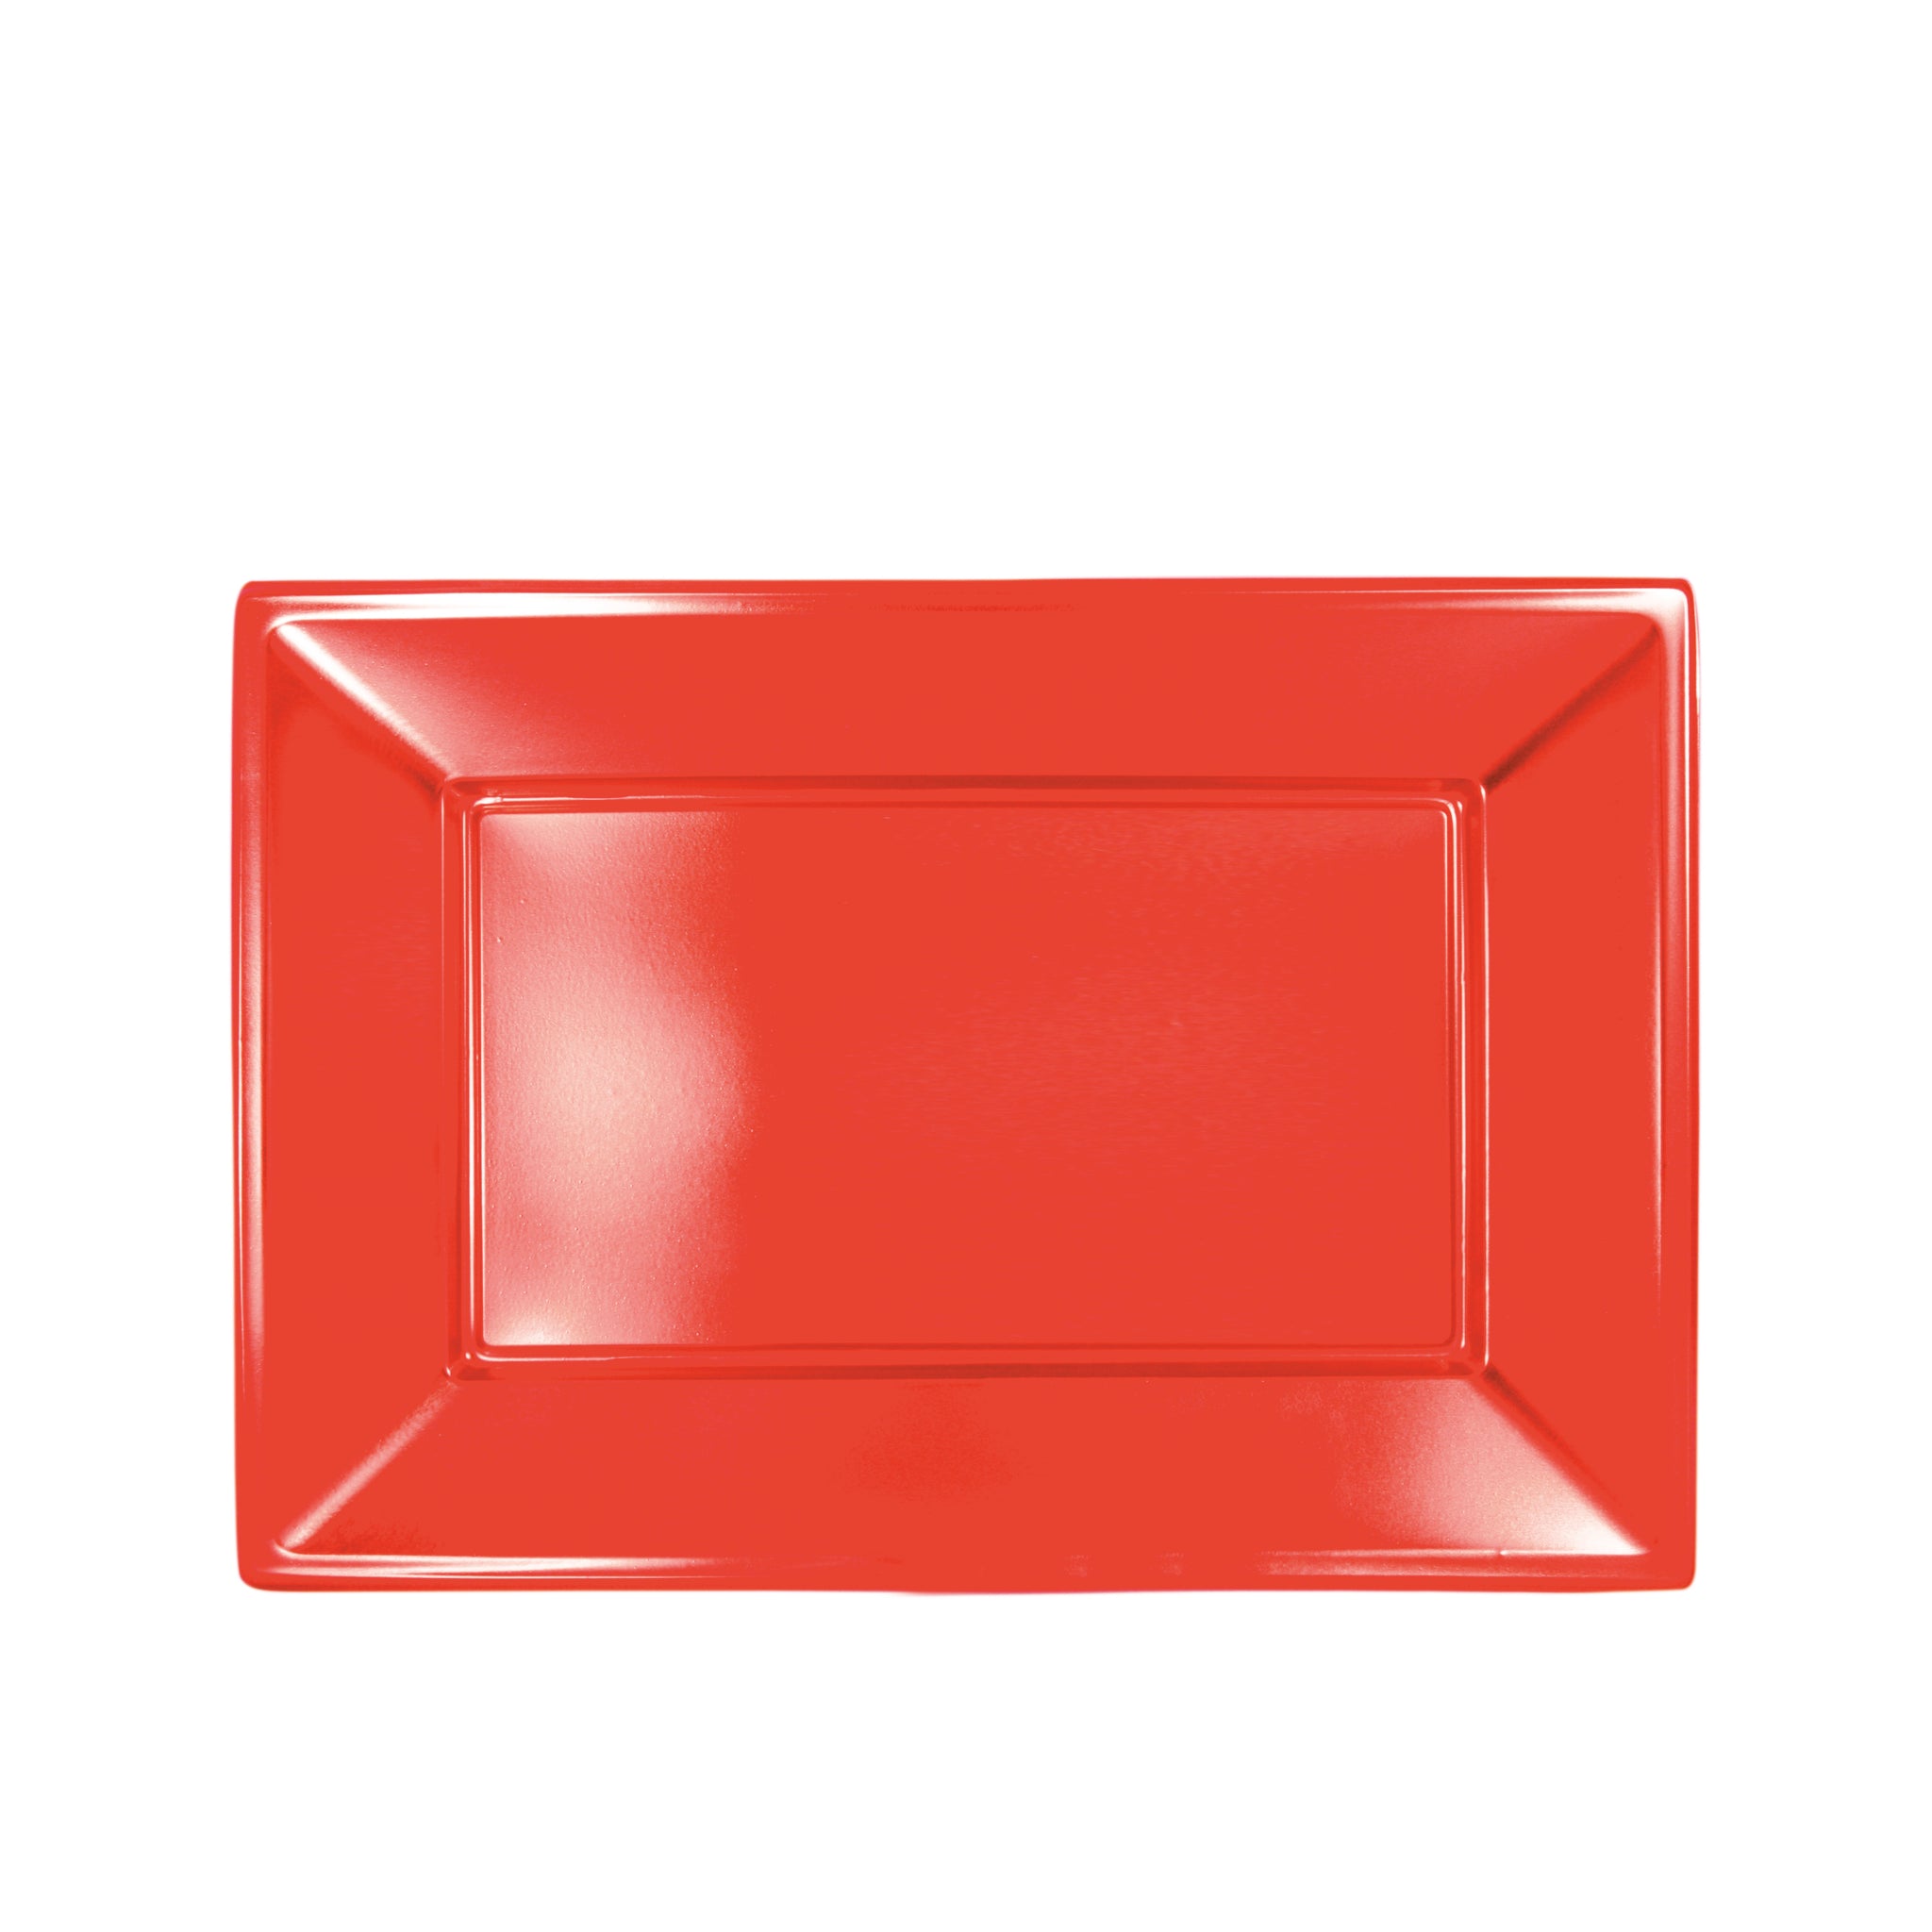 Metallic rectangular tray 33 x 22.5 cm red